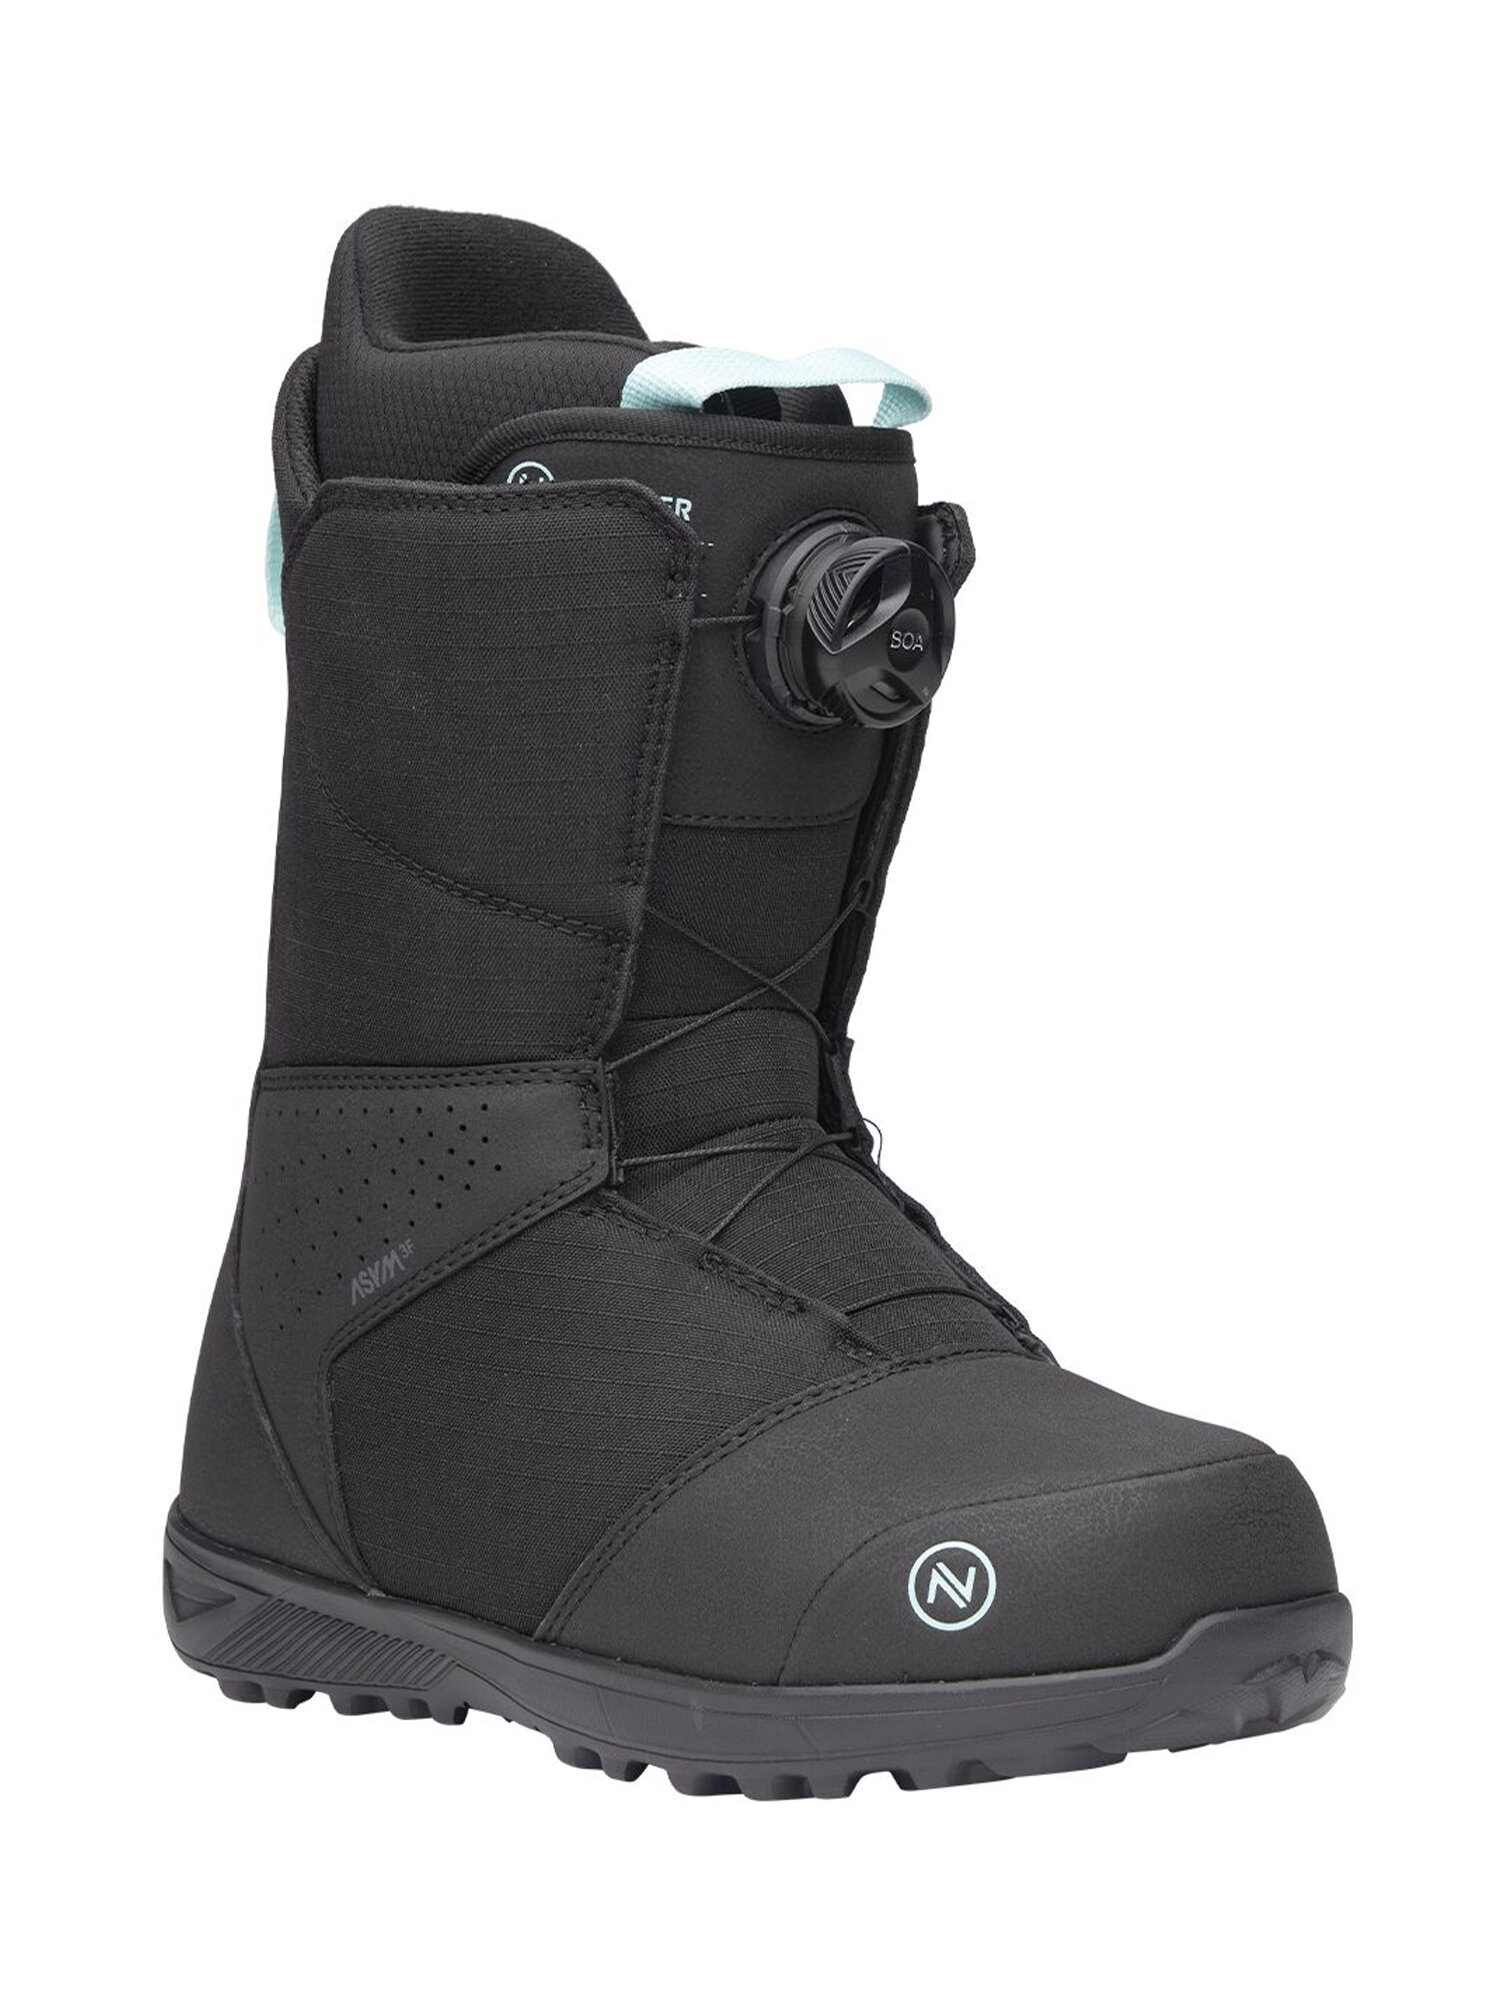 Ботинки для сноуборда NIDECKER Sierra W Black (US:8)